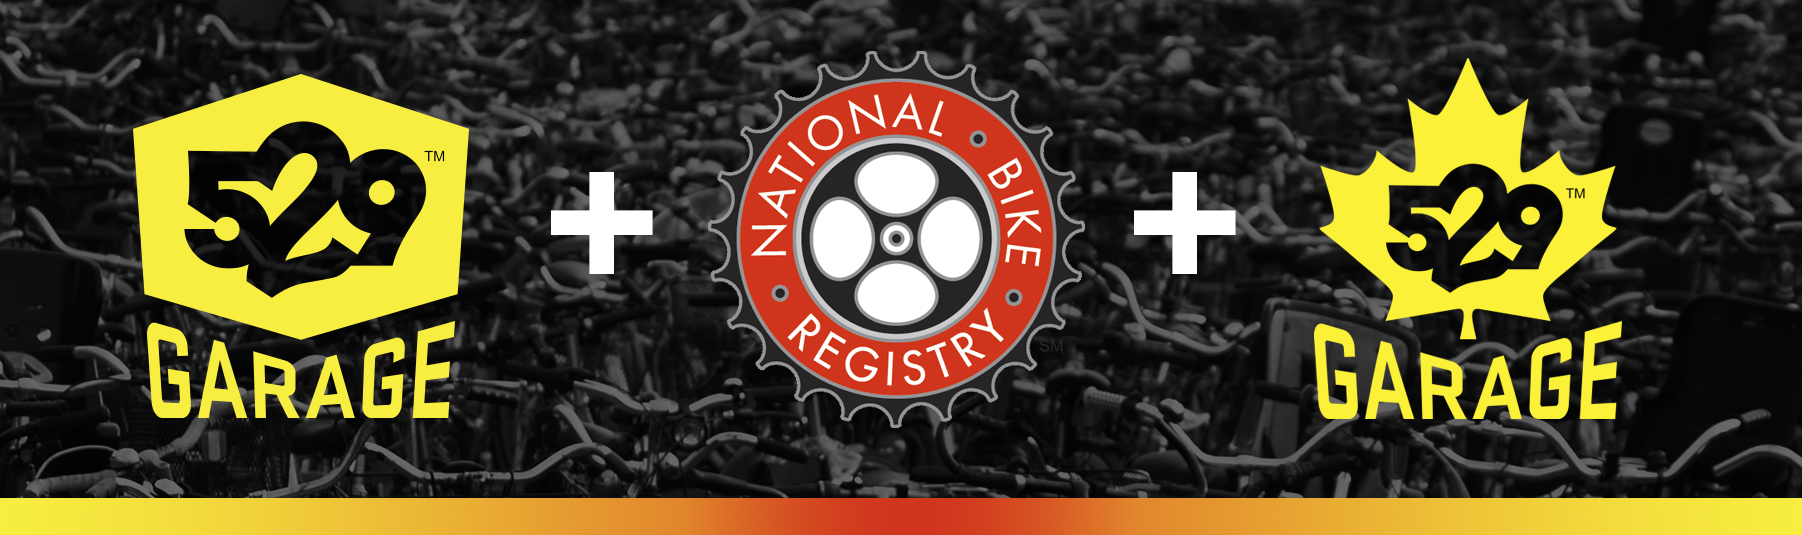 brand 529 logo banner plus the national bike registry logo